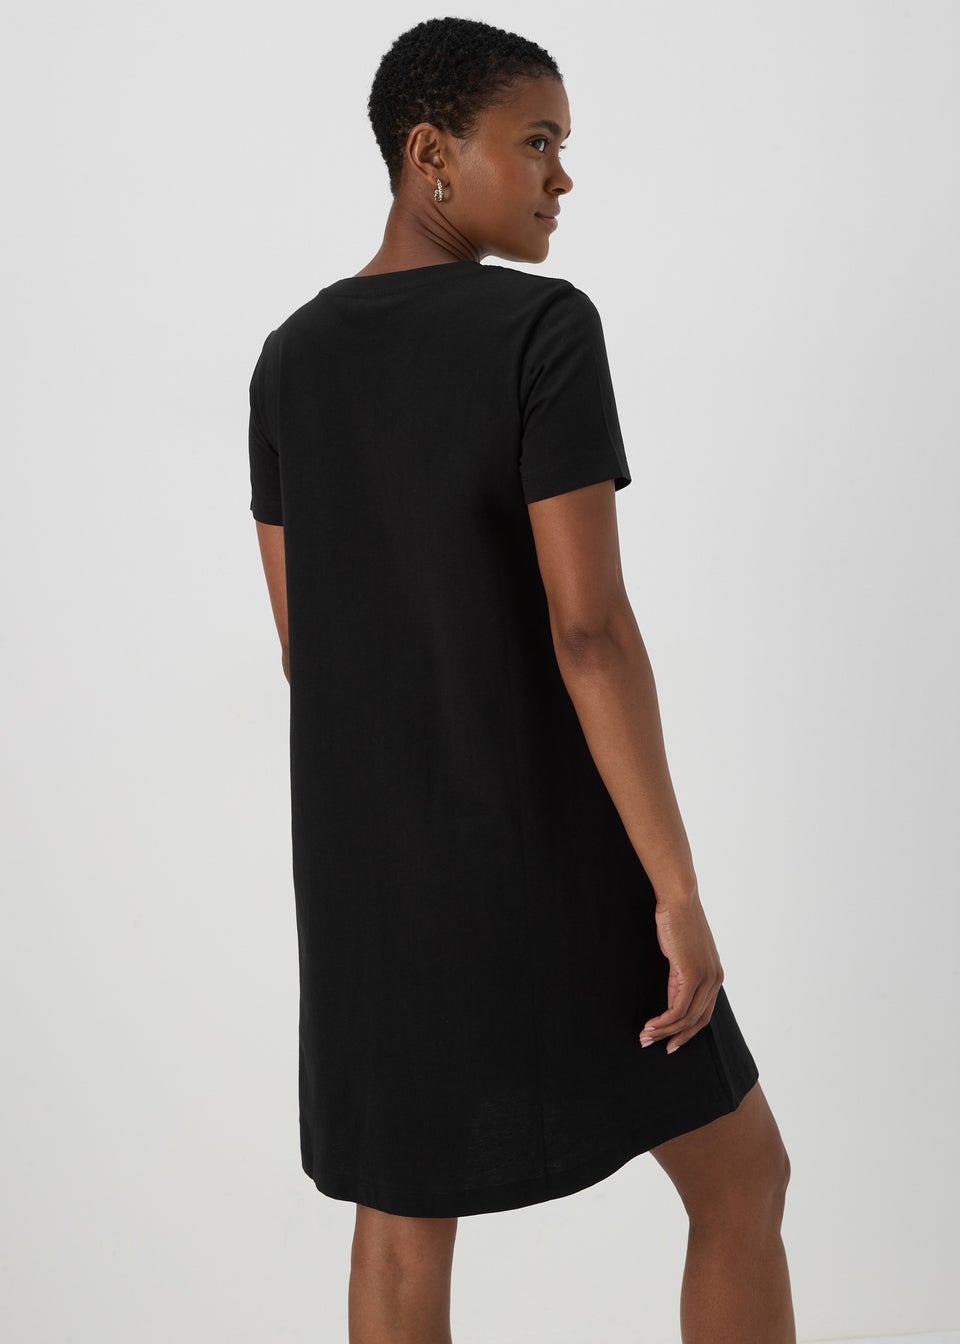 Black Jersey Mini T-Shirt Dress